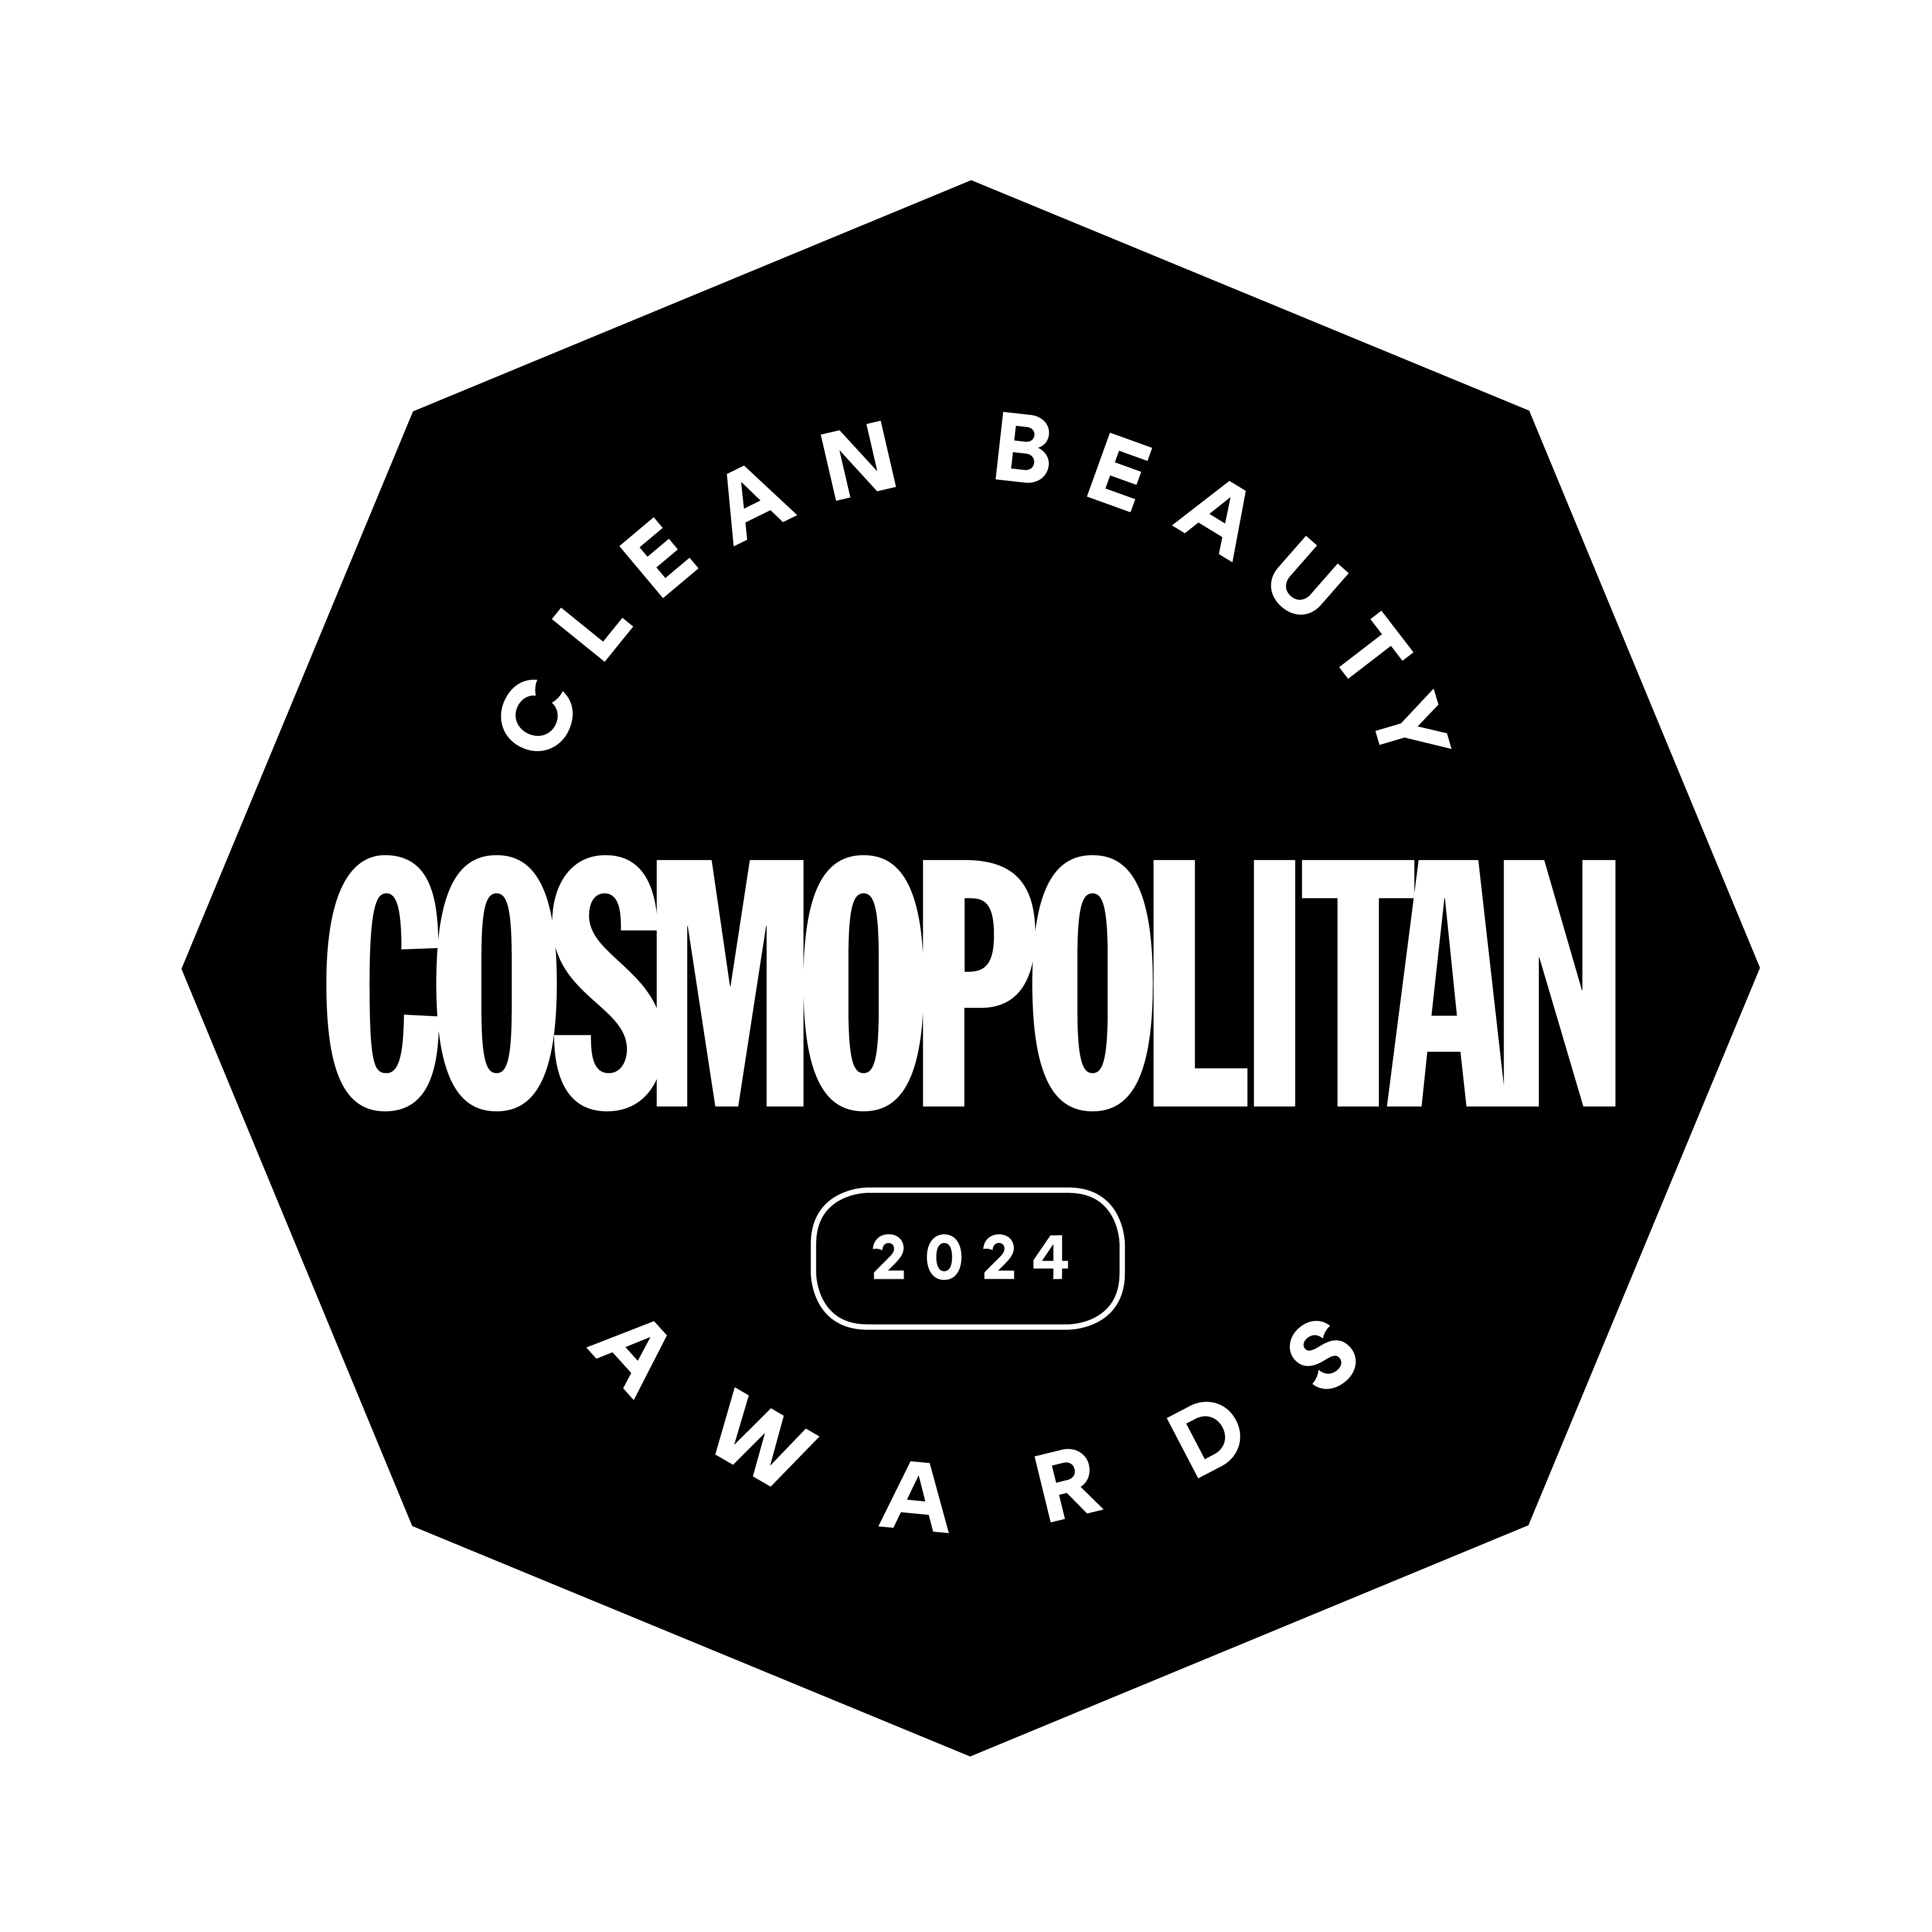 Cosmo Award 2024